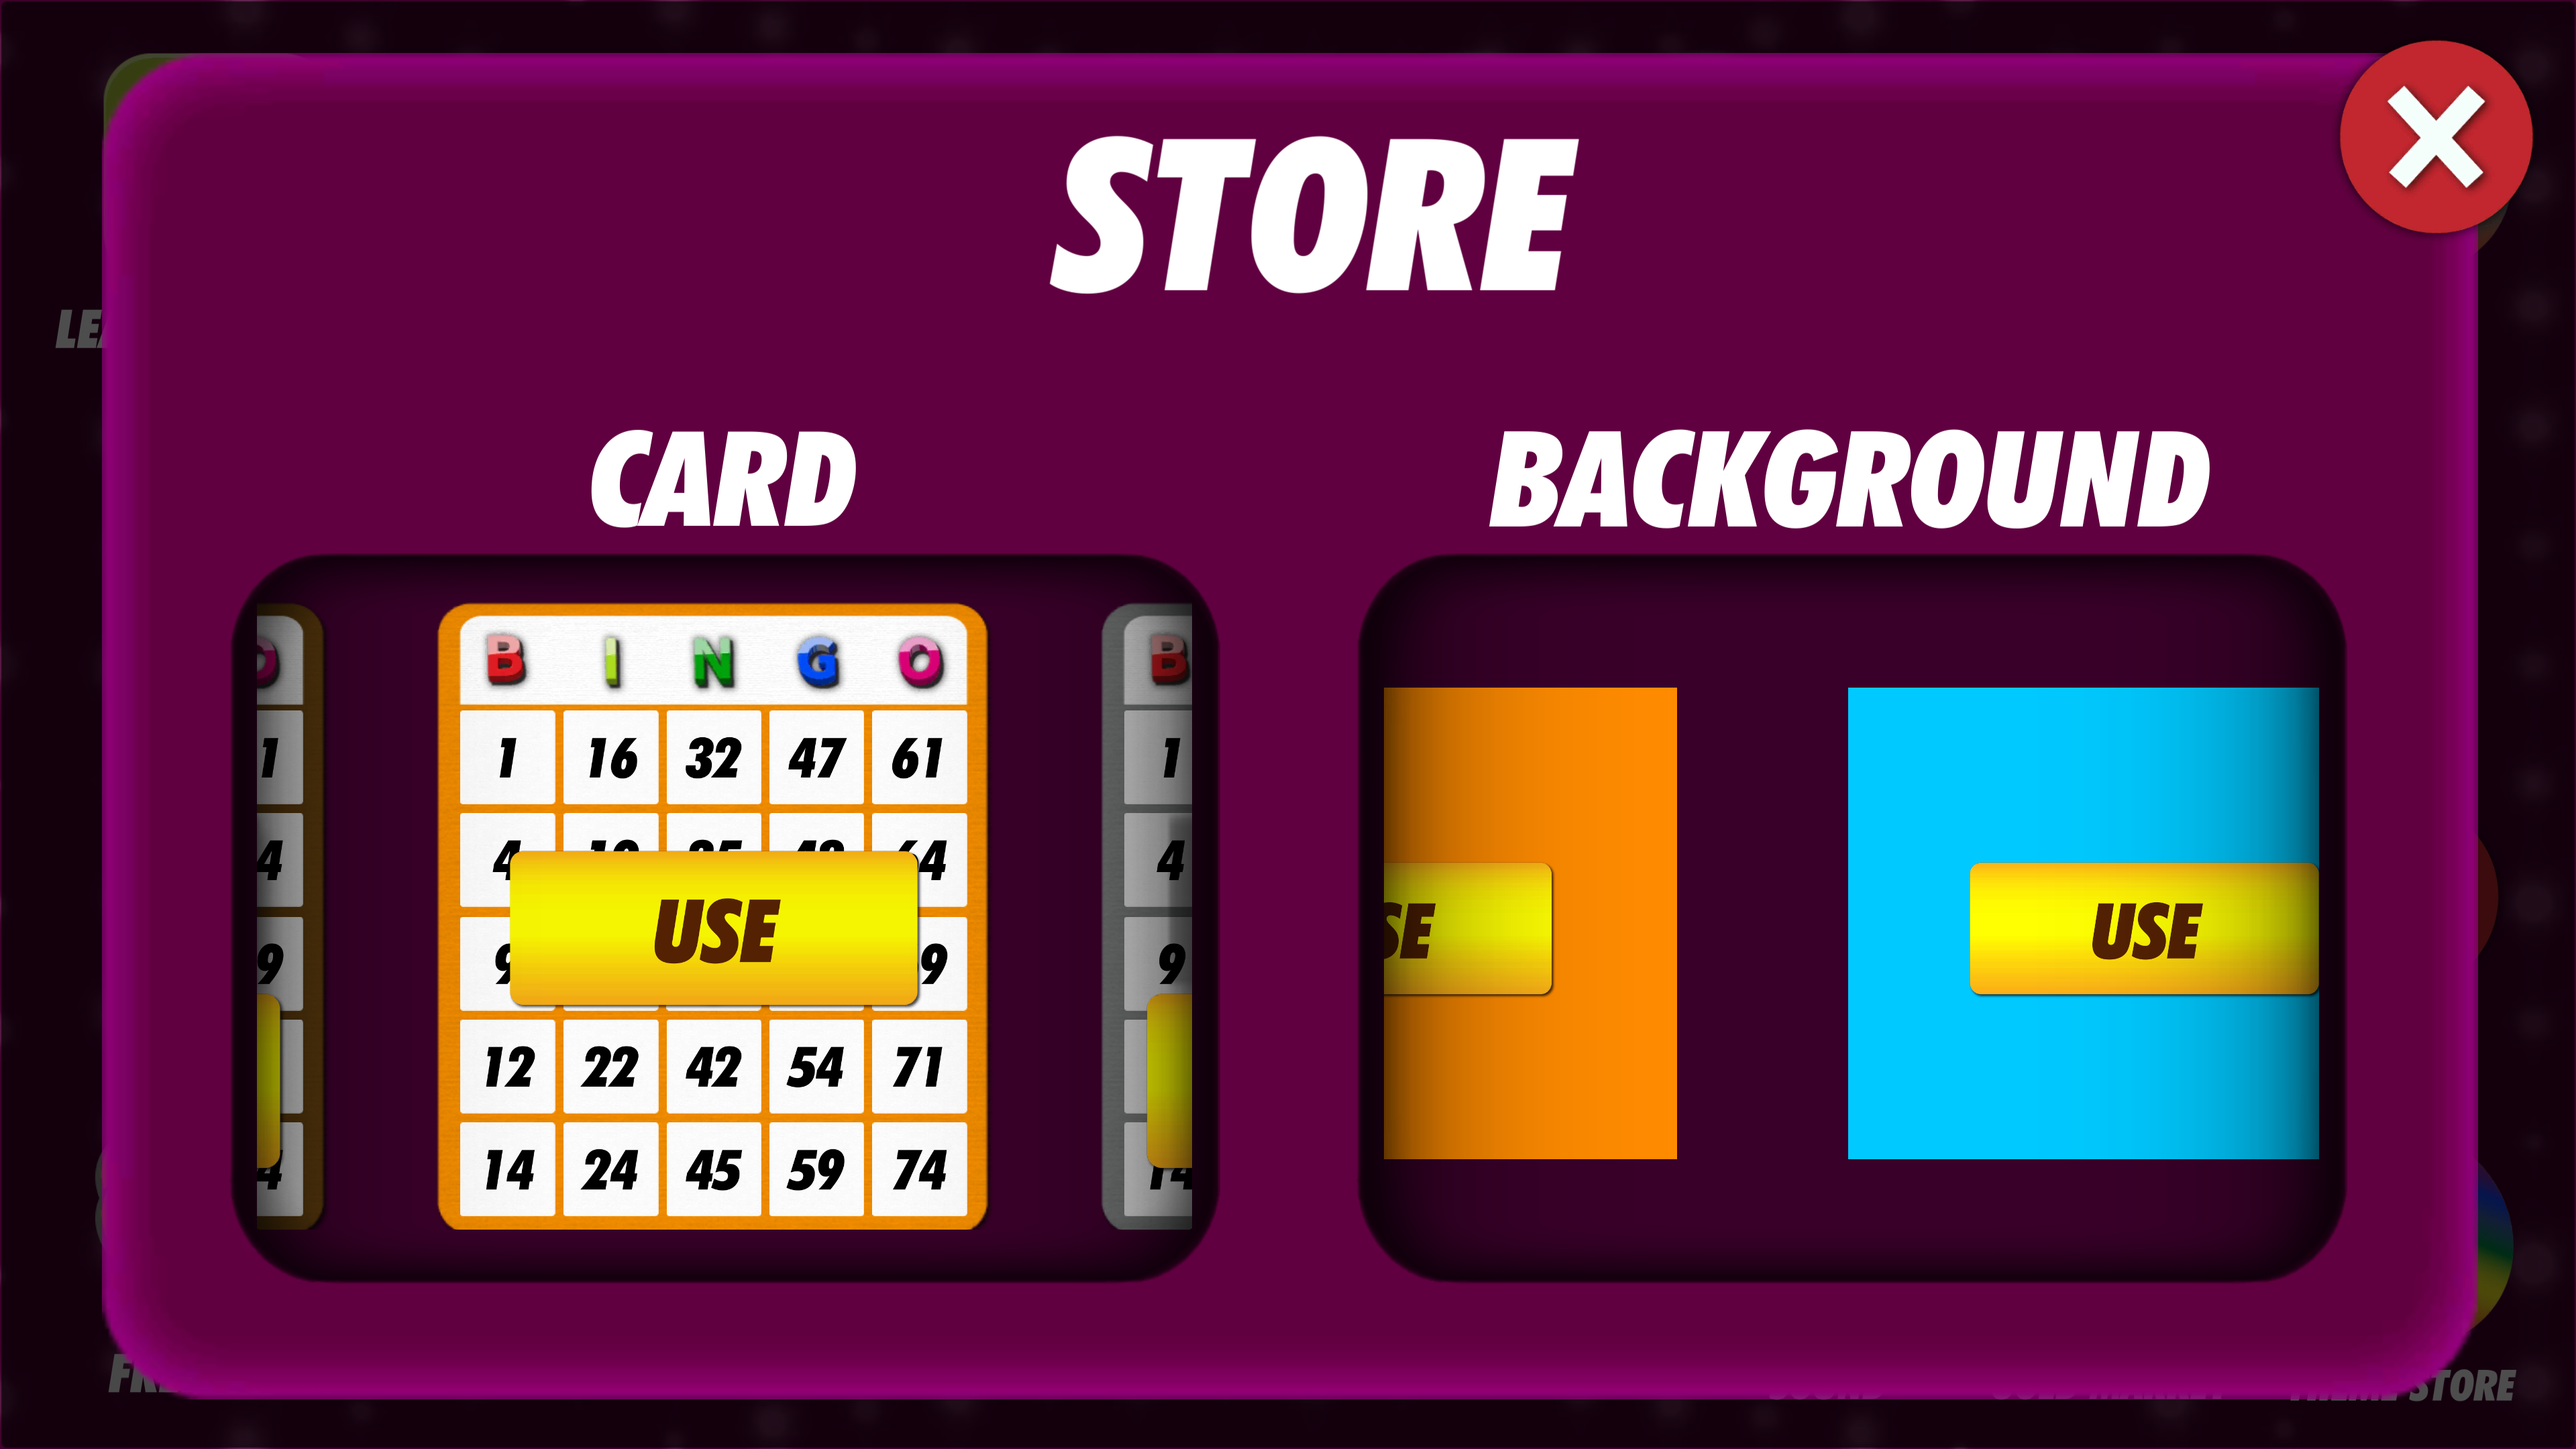 Play Bingo - Offline Bingo Games Online